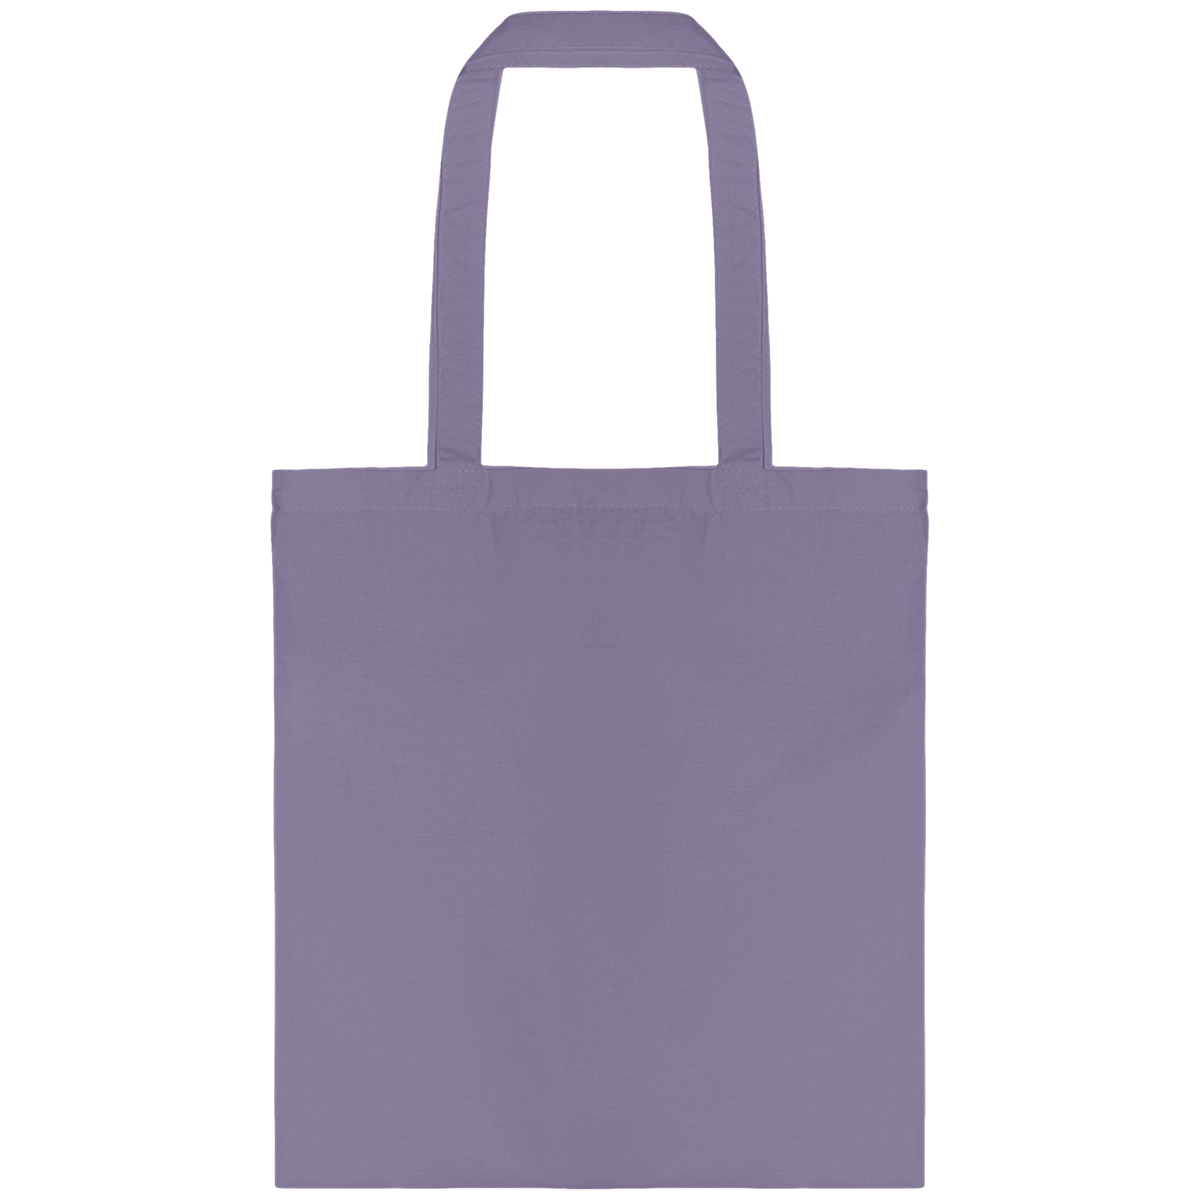 Personnalisez Votre Tote Bag Avec Tunetoo Light Violet